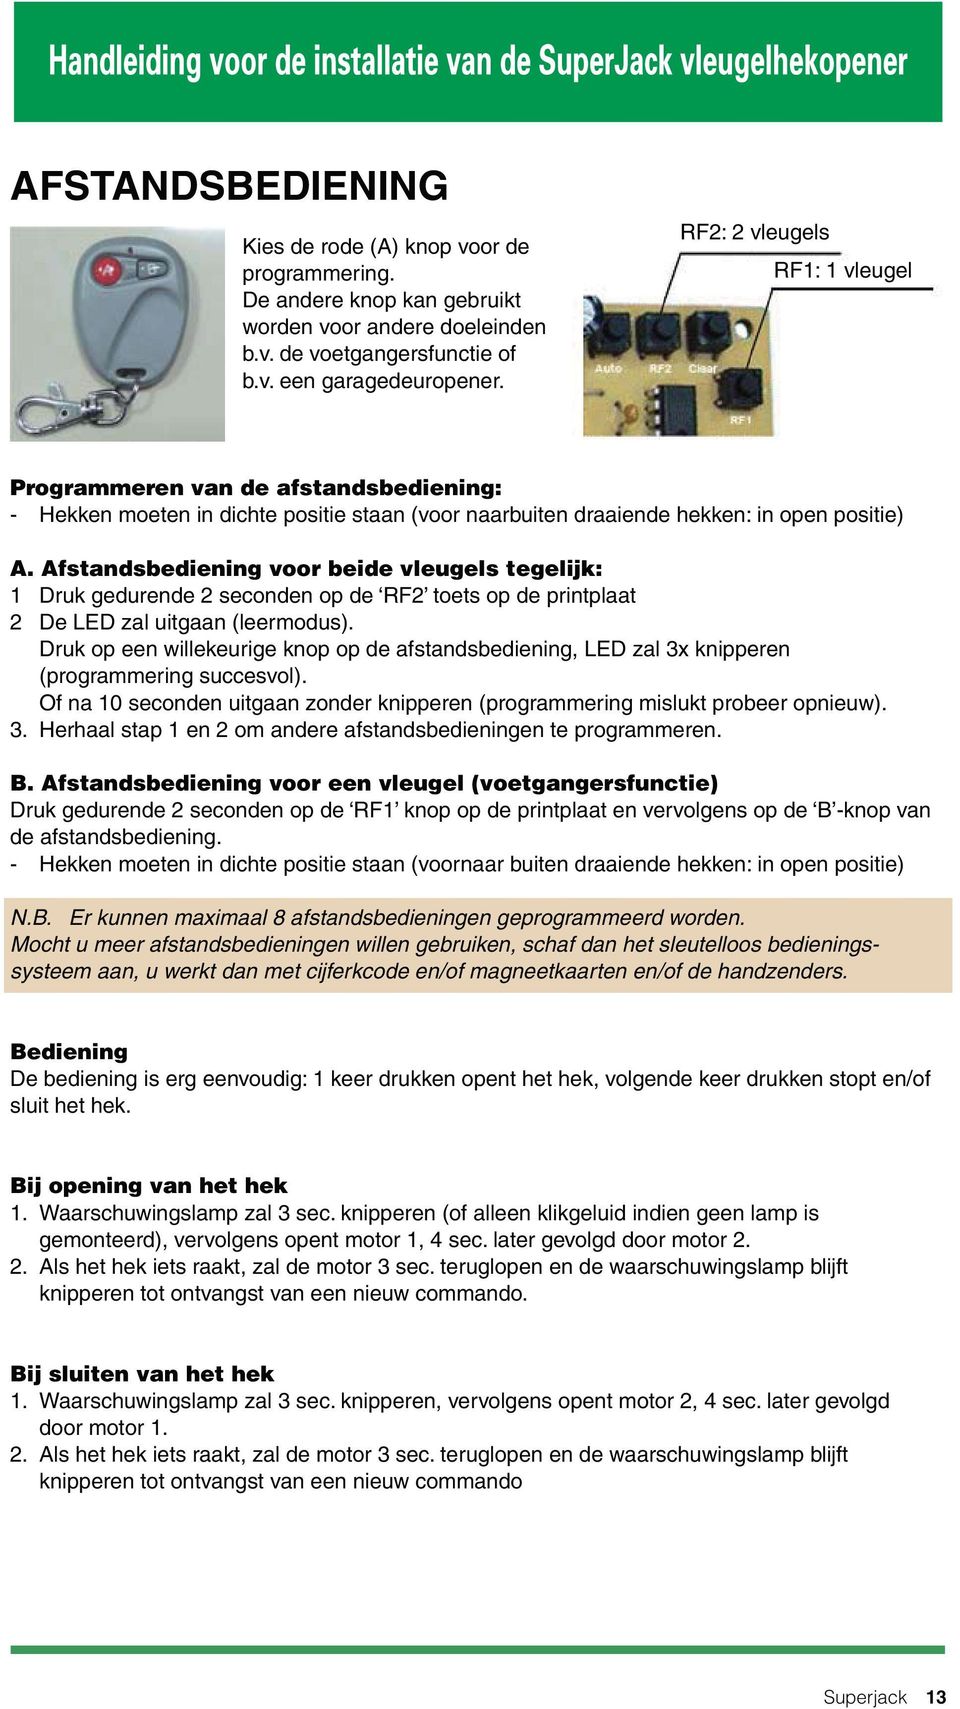 Handleiding voor de installatie van de SuperJack vleugelhekopener. Superjack  - PDF Gratis download